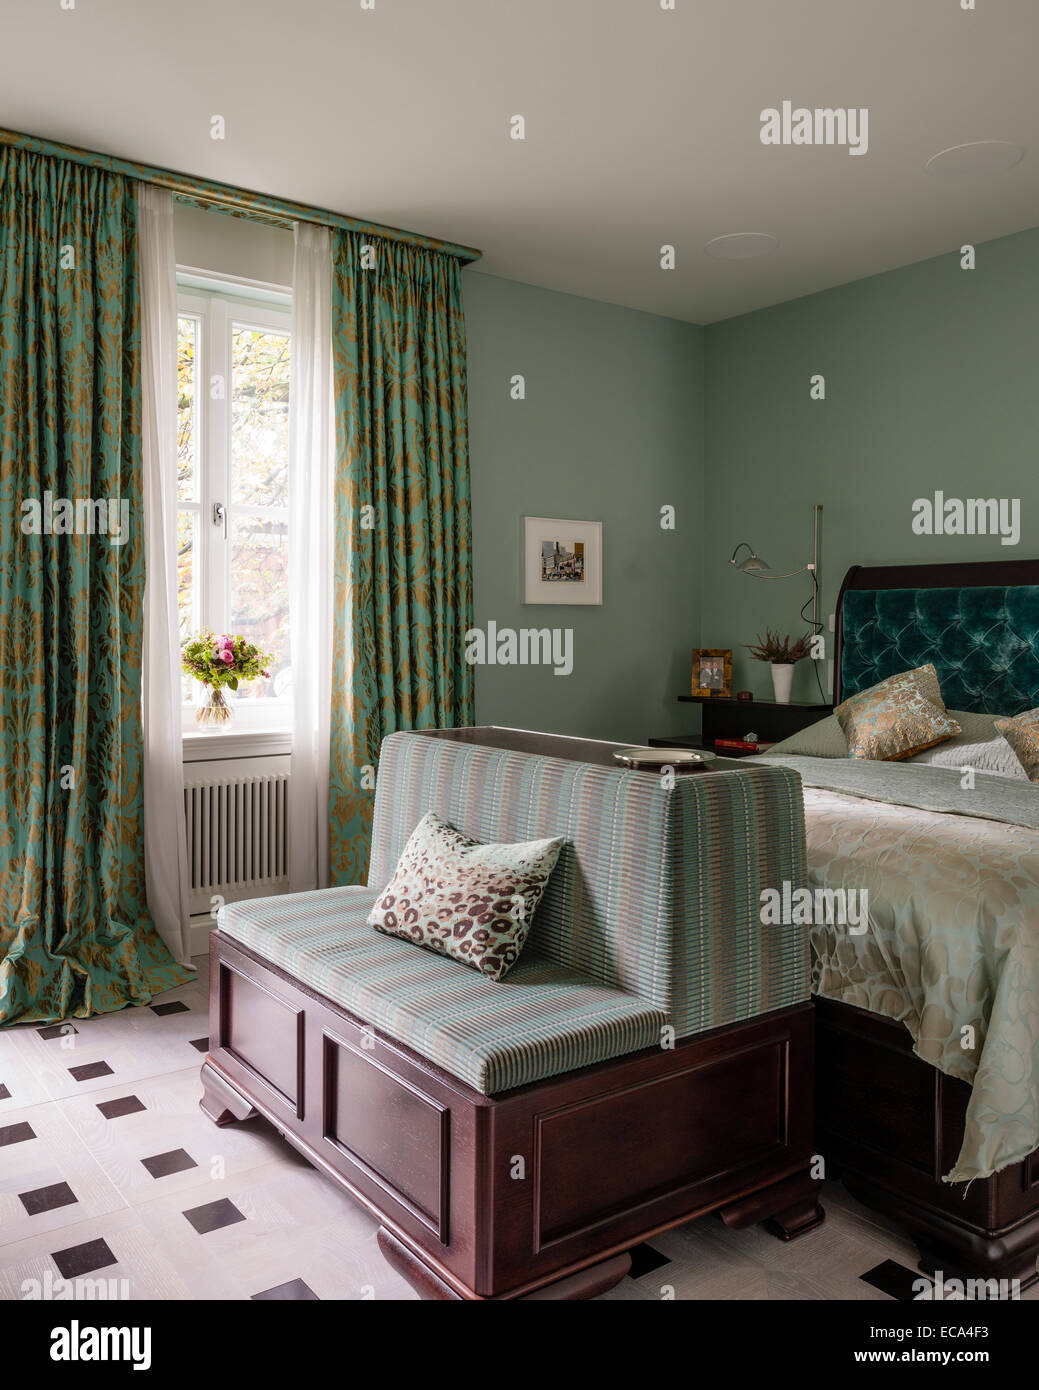 L'aigue-marine sur tête de lit en velours boutonnée, lit dans la chambre avec des rideaux vert et or Banque D'Images